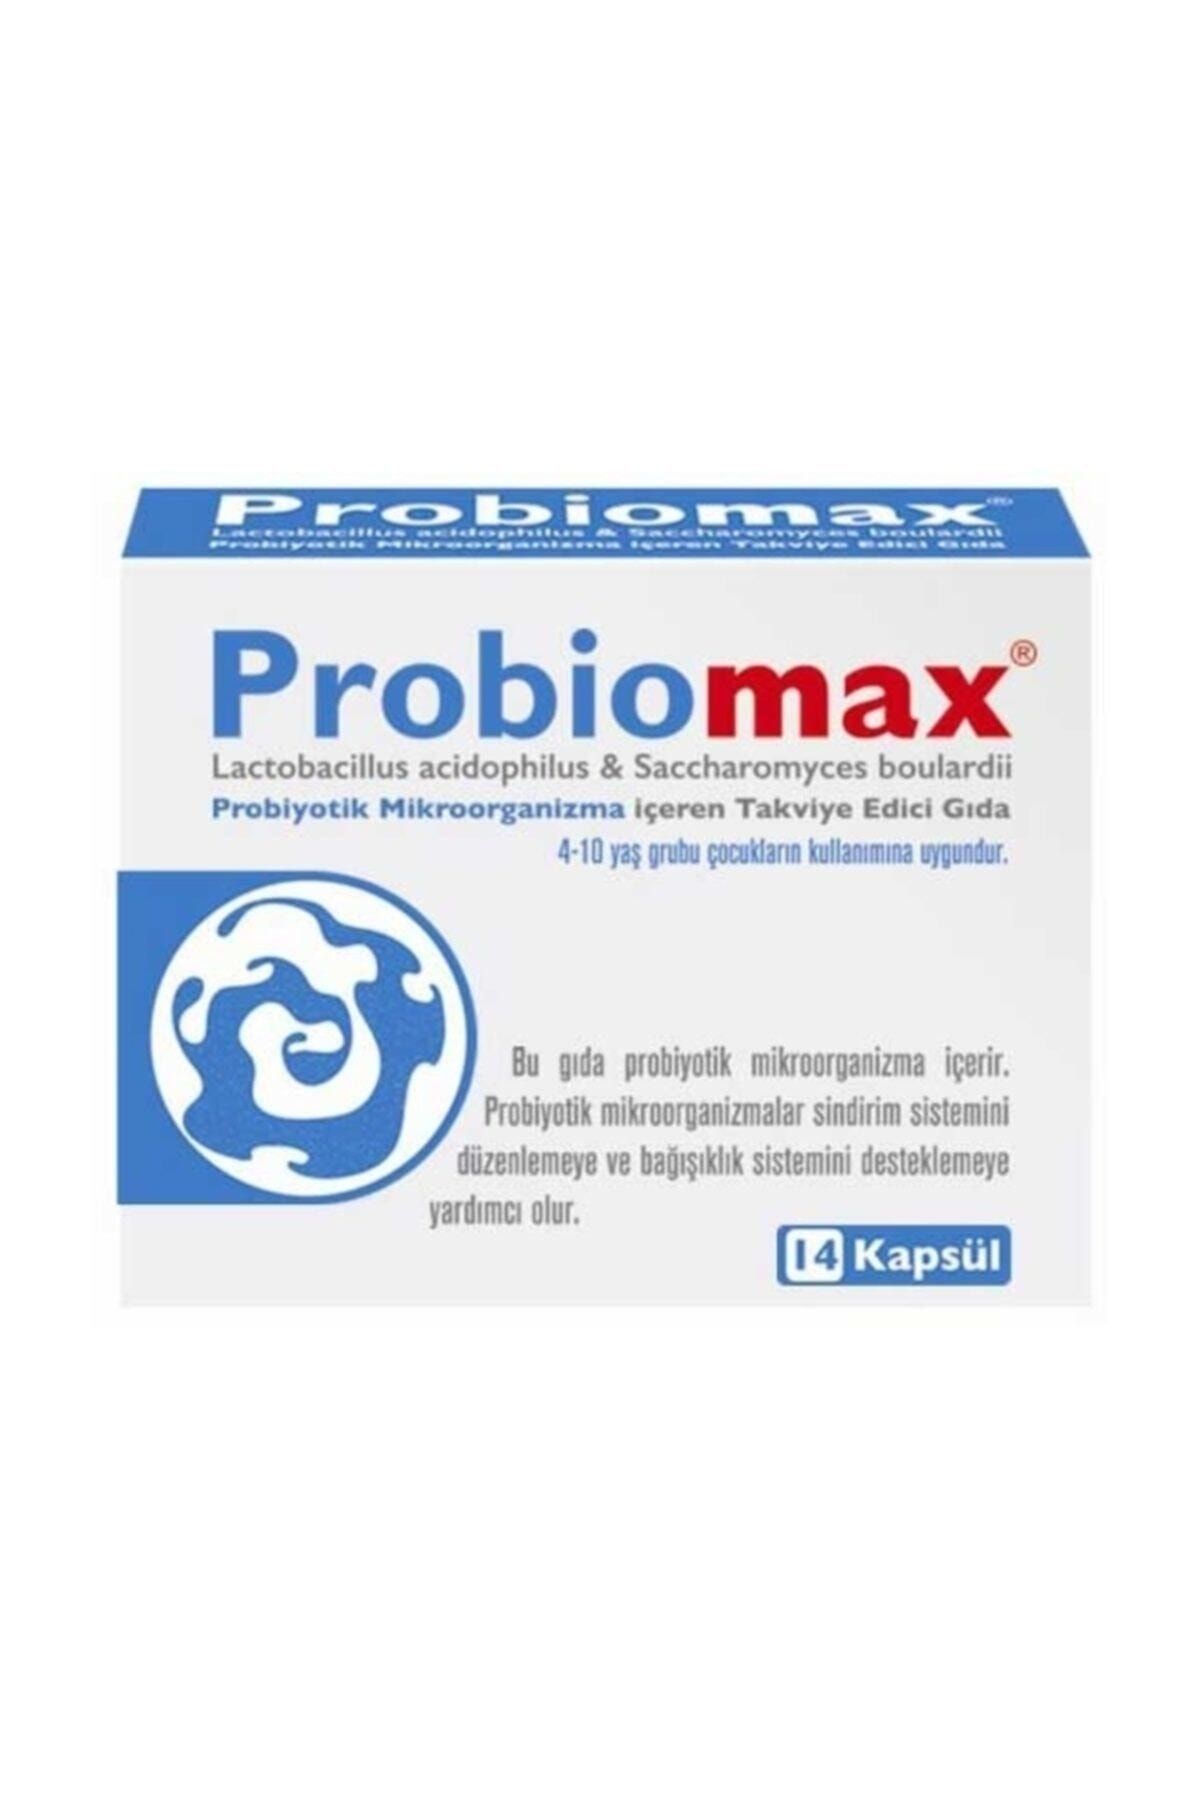 Imuneks Probiomax Takviye Edici Gıda